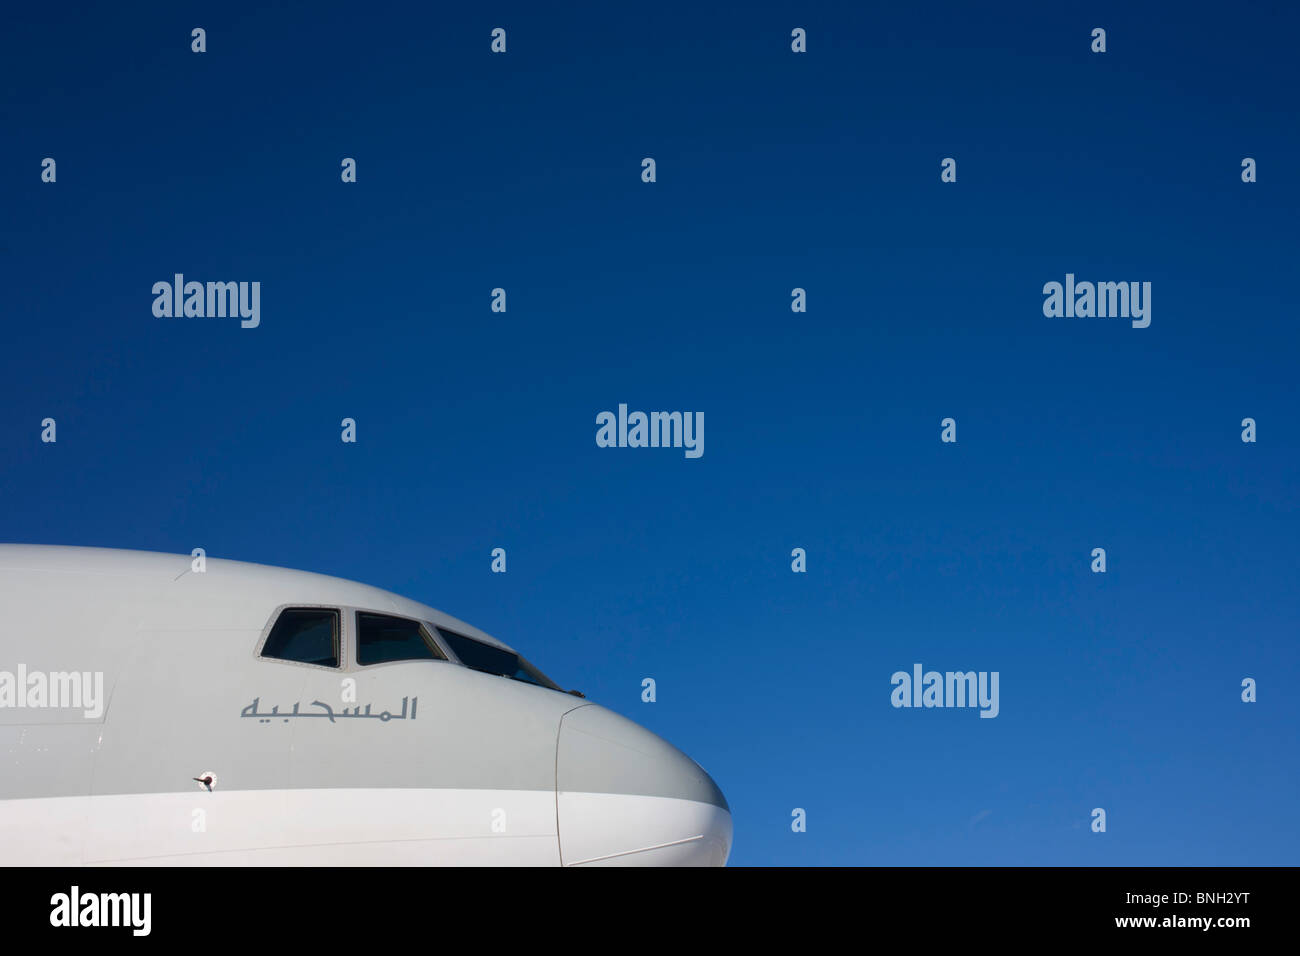 Ein Boeing 777ER (Extended Range) Verkehrsflugzeug, die Fluggesellschaft Qatar Airways angehören, basiert, die in dem Golfstaat. Stockfoto